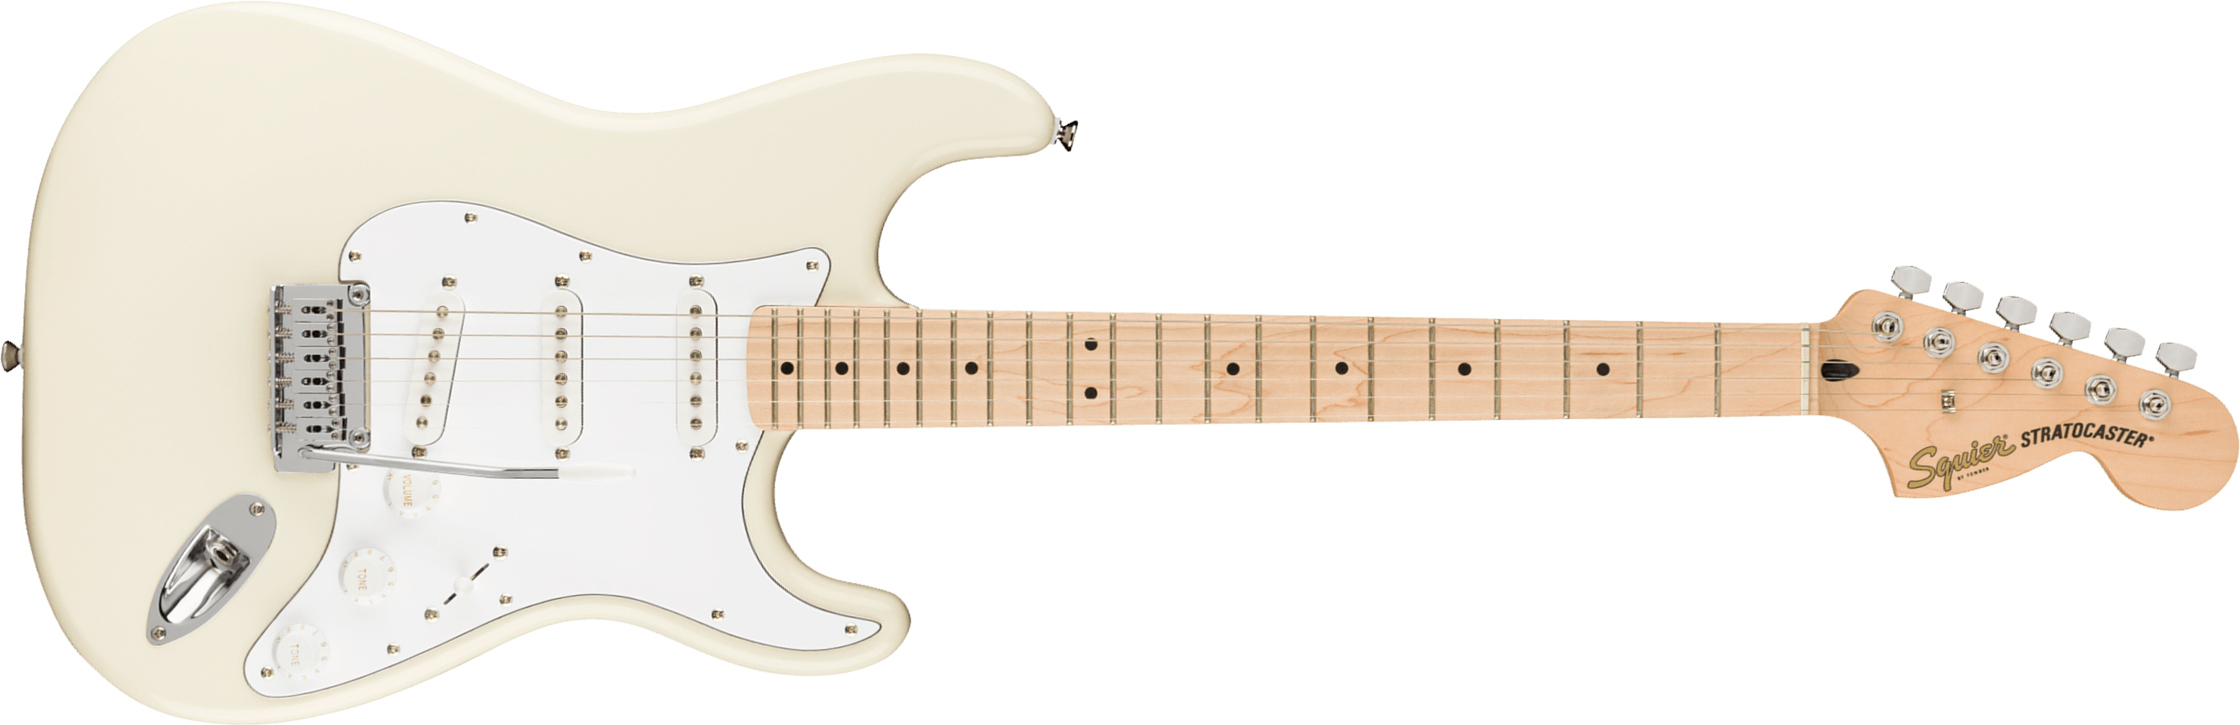 Squier Strat Affinity 2021 Sss Trem Mn - Olympic White - Elektrische gitaar in Str-vorm - Main picture